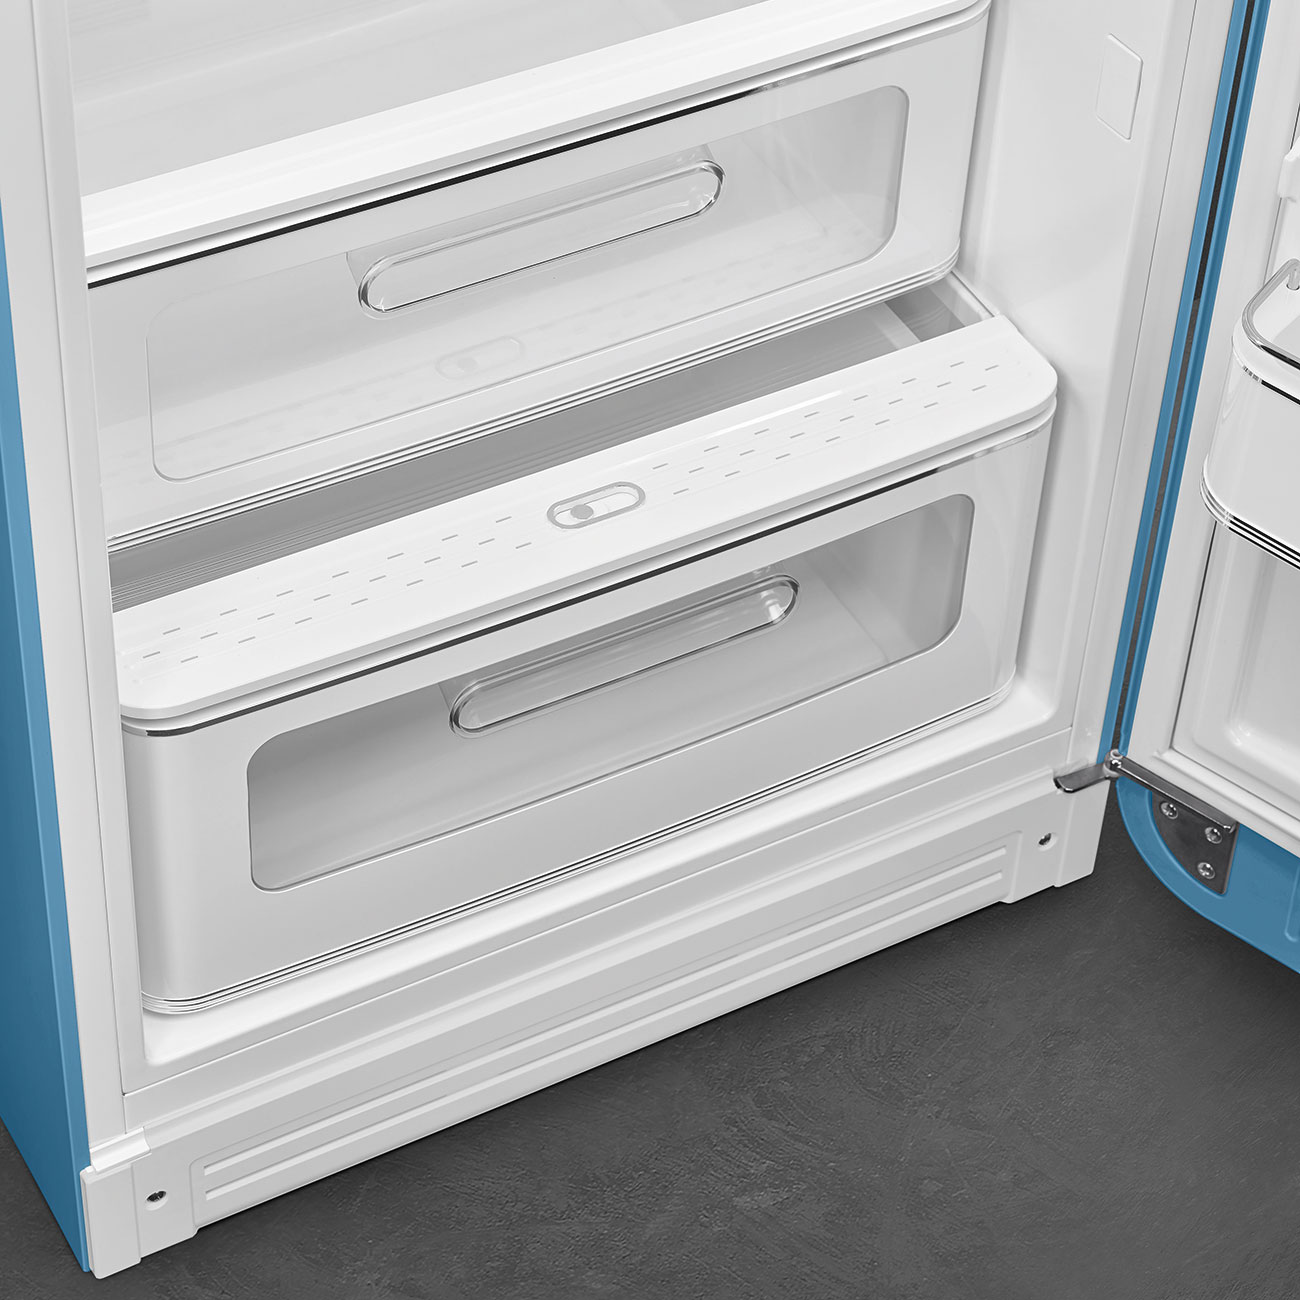 Light Blue refrigerator - Smeg_7